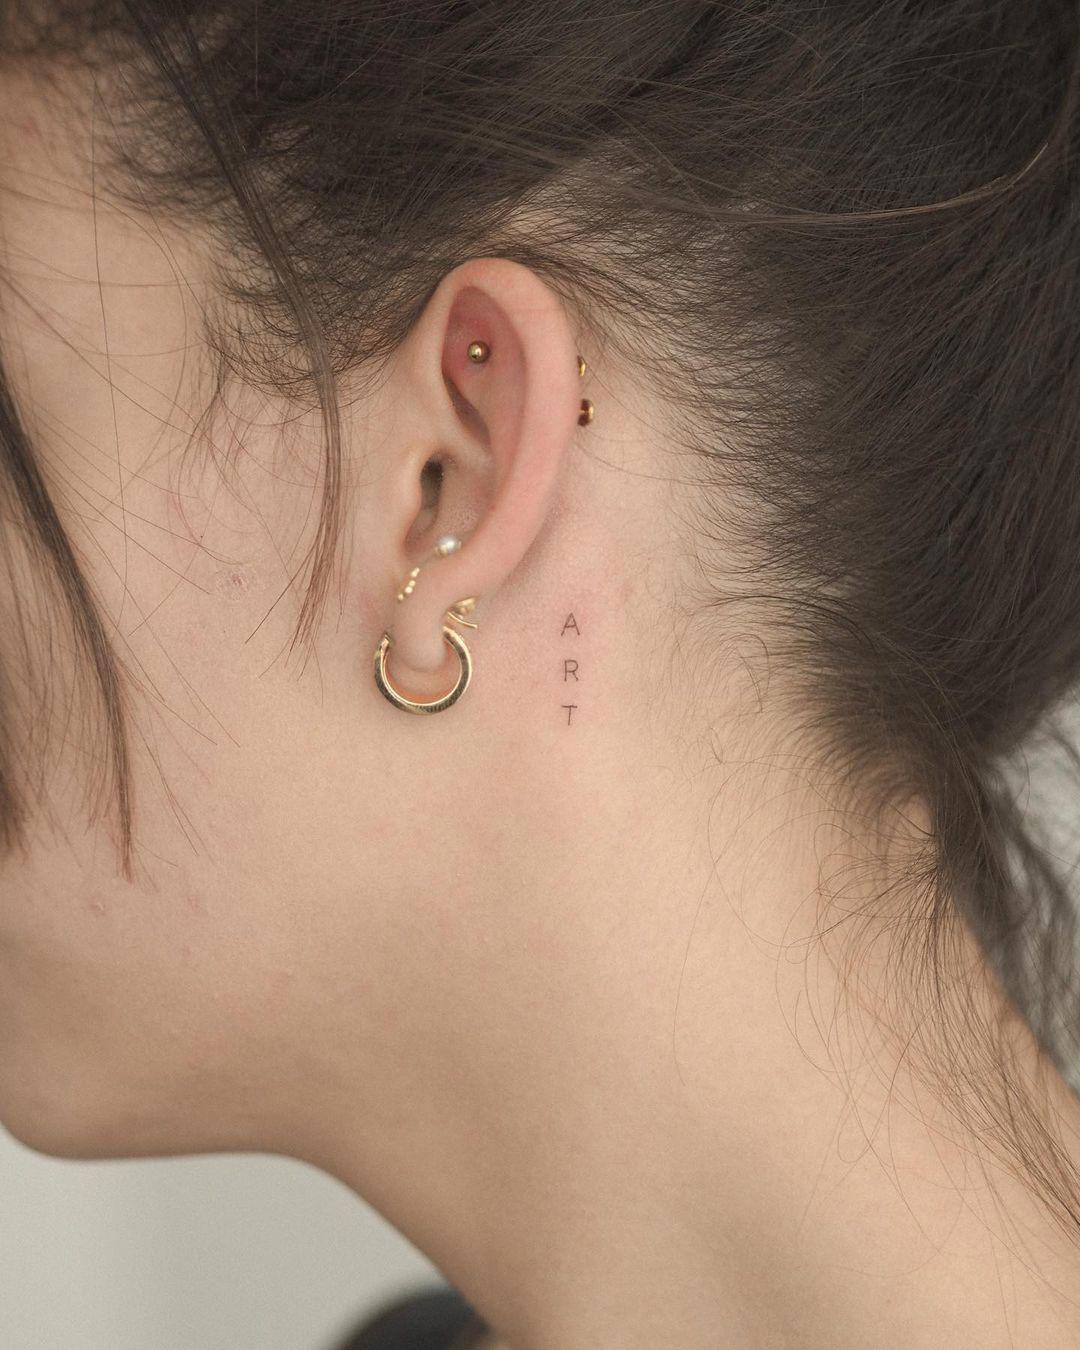 La palabra 'art' tatuada tras la oreja